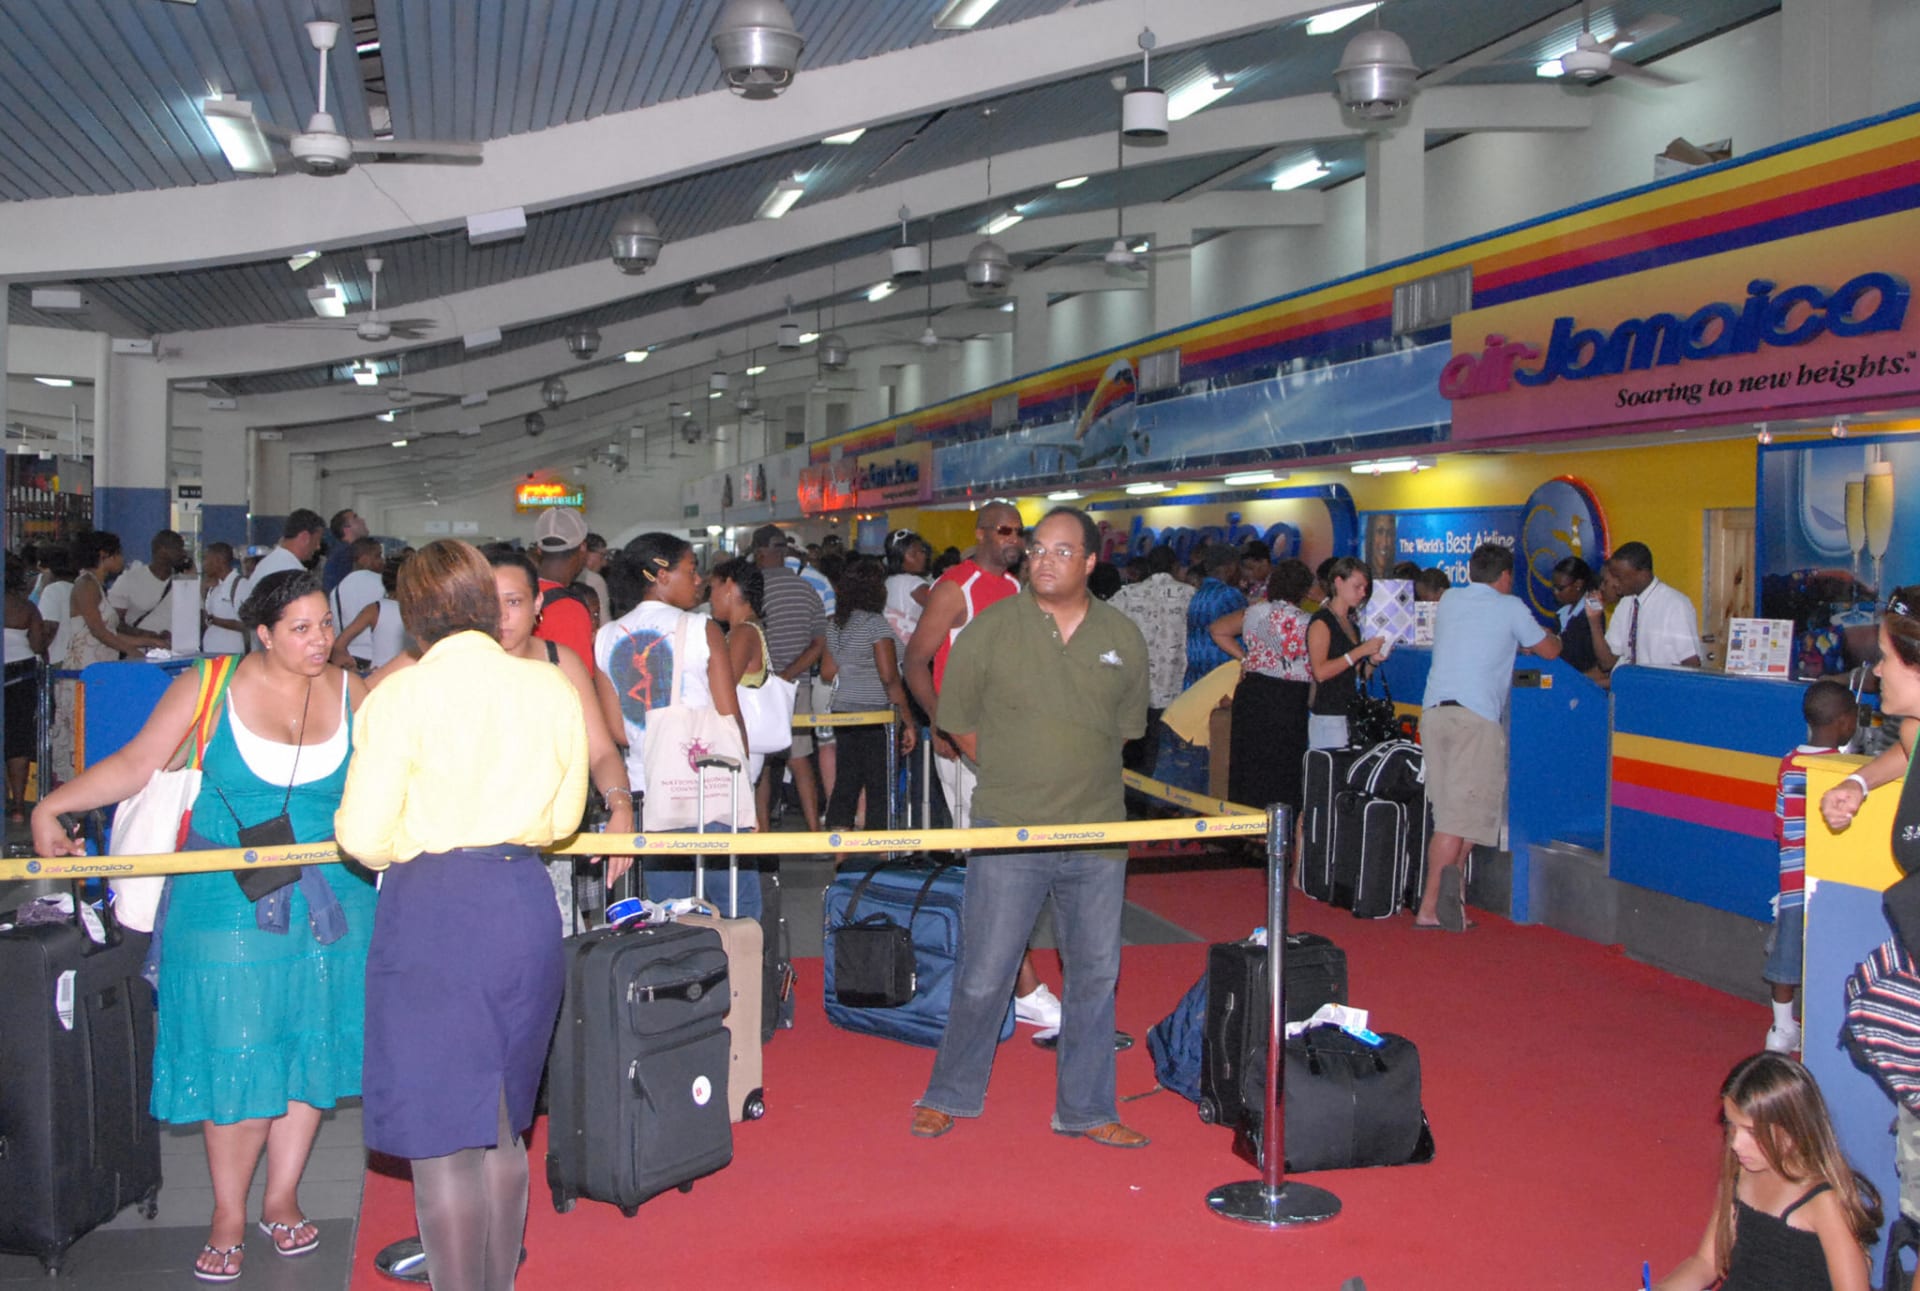 إلغاء رحلات وصول ومغادرة في جامايكا.. ومئات المسافرين علقوا بين الأرض والسماء